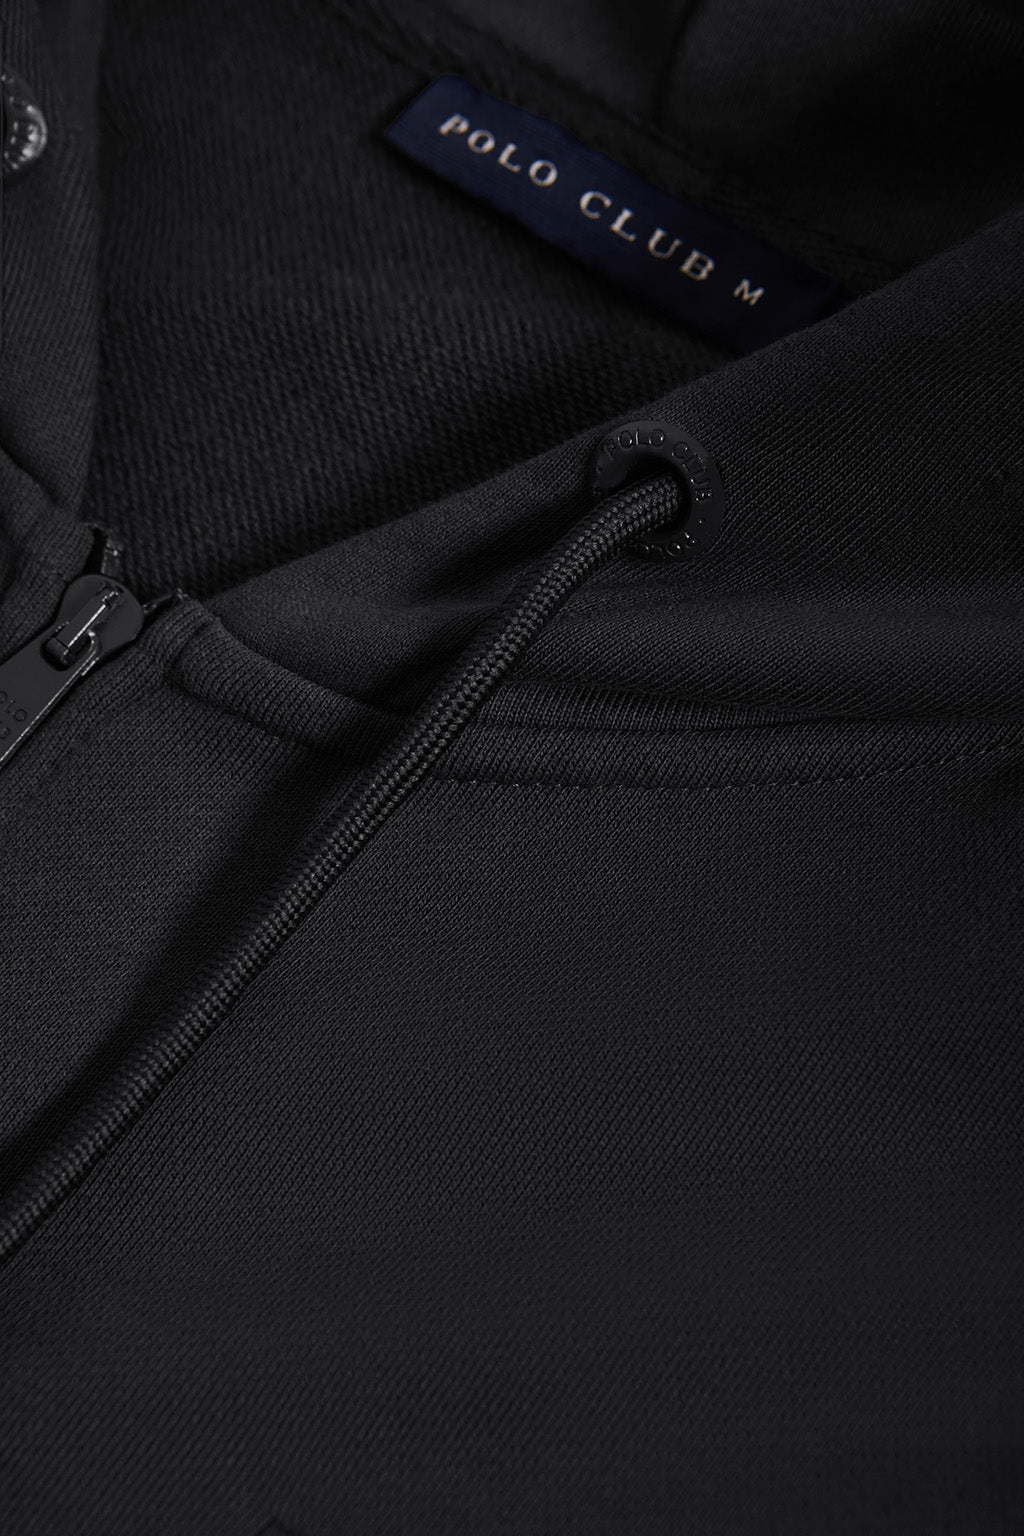 Sudadera negra con capucha y detalle Polo Club – Polo Club Europe